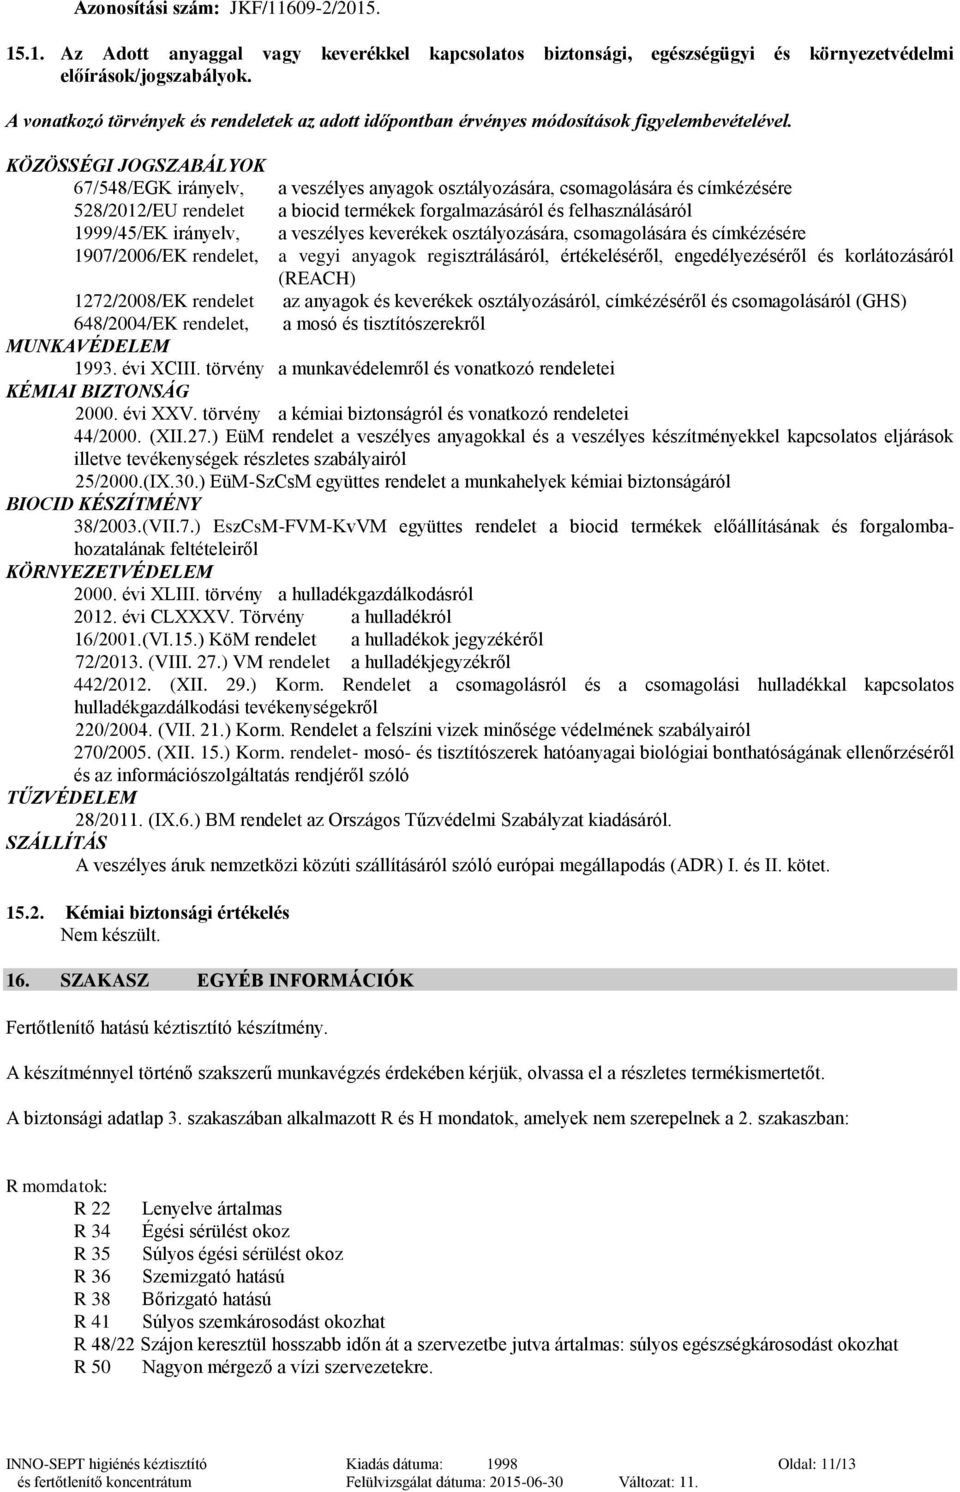 BIZTONSÁGI ADATLAP. INNO-SEPT higiénés kéztisztító és fertőtlenítő  koncentrátum. (Az 1272/2008/EK rendelet szerint) - PDF Free Download